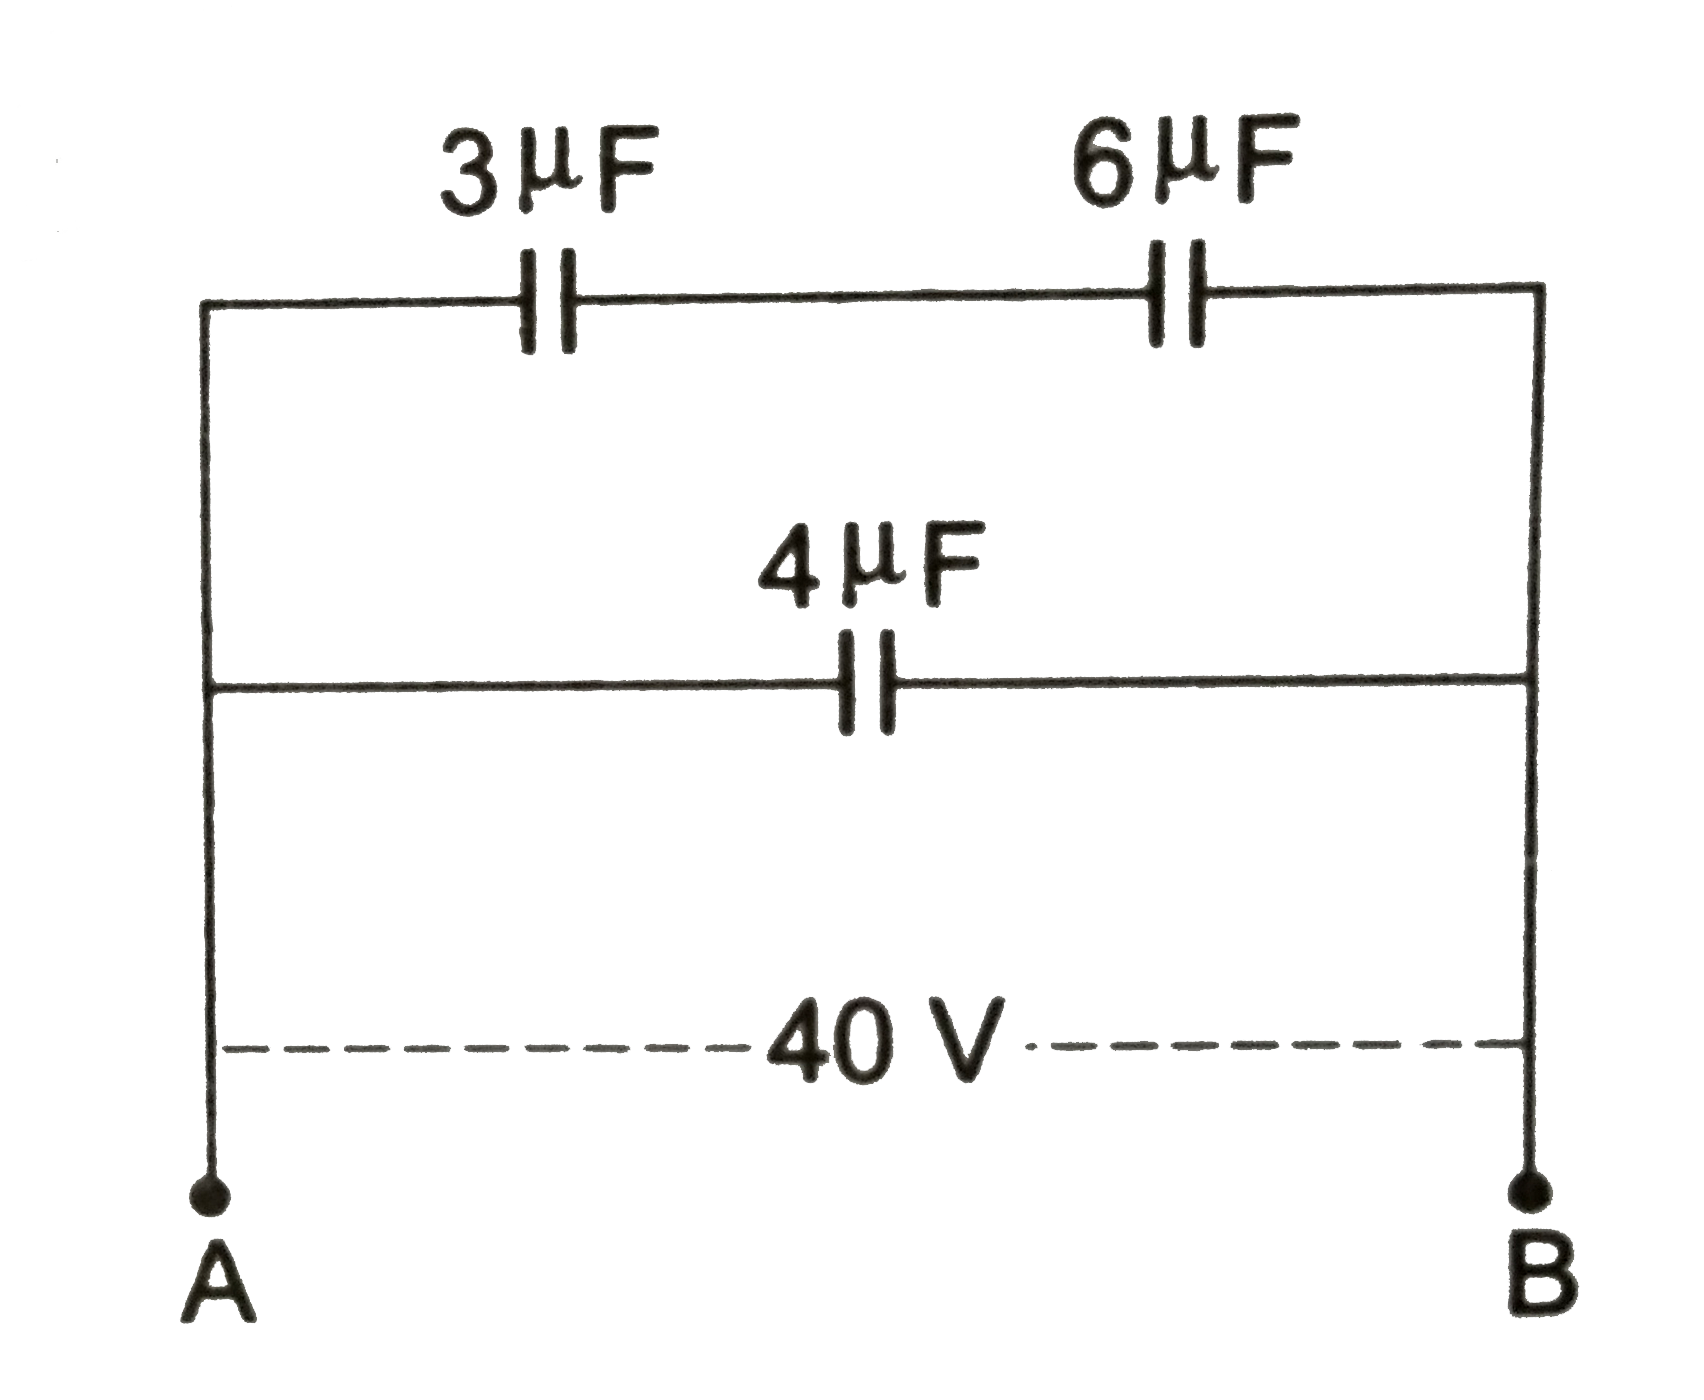 चित्र 2.5 में प्रदर्शित व्यवस्था में 6 mu F धारिता के संधरित्र की प्लेटो के बीच विभवांतर V है तथा A एव B बिन्दुओ के बीच तुल्य धारिता X है।